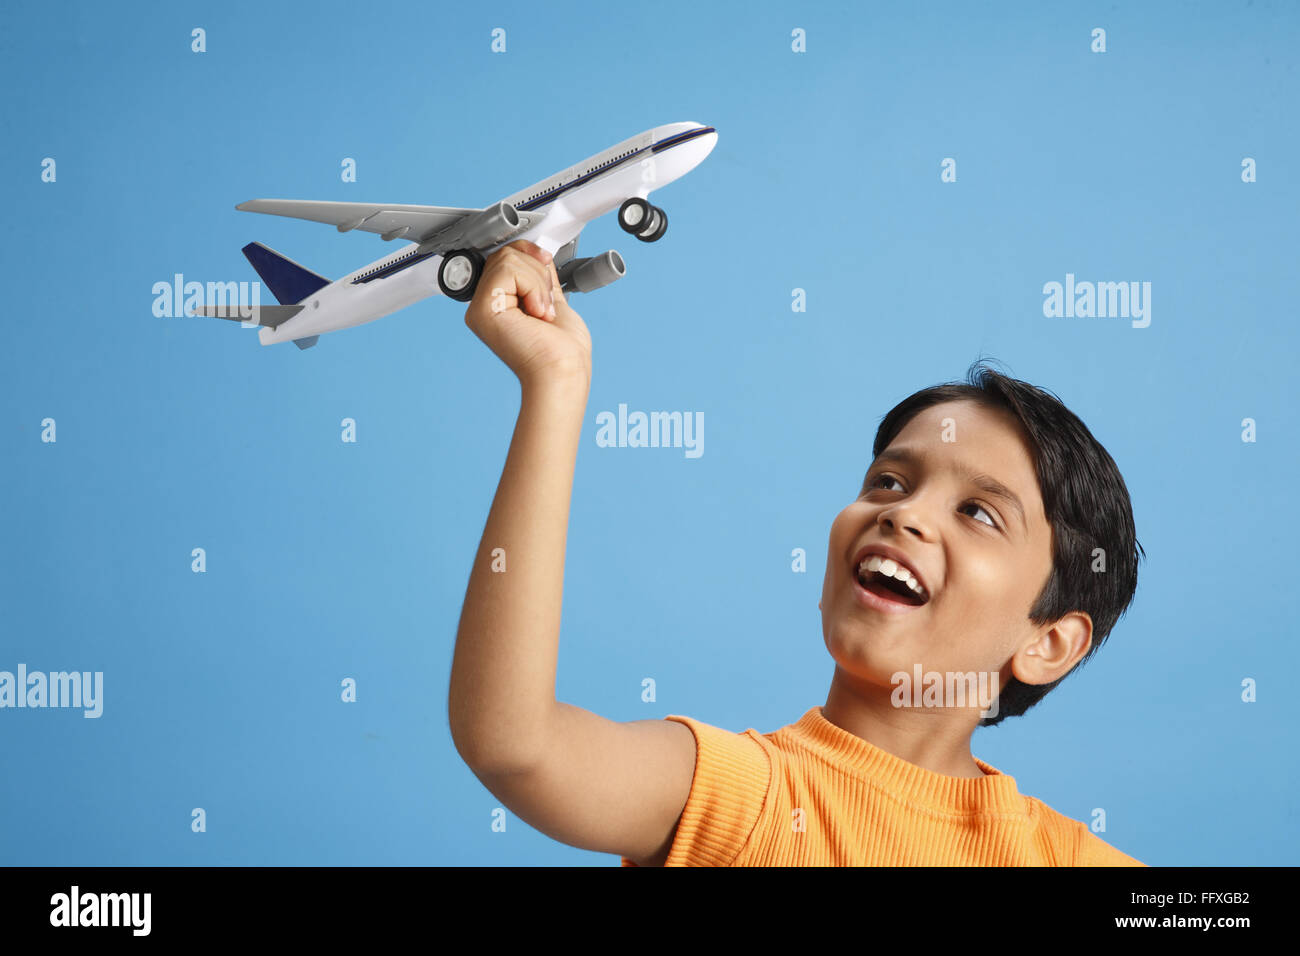 Dieci anni di old boy holding toy piano in mano e cercano di volare è il signor#703V Foto Stock